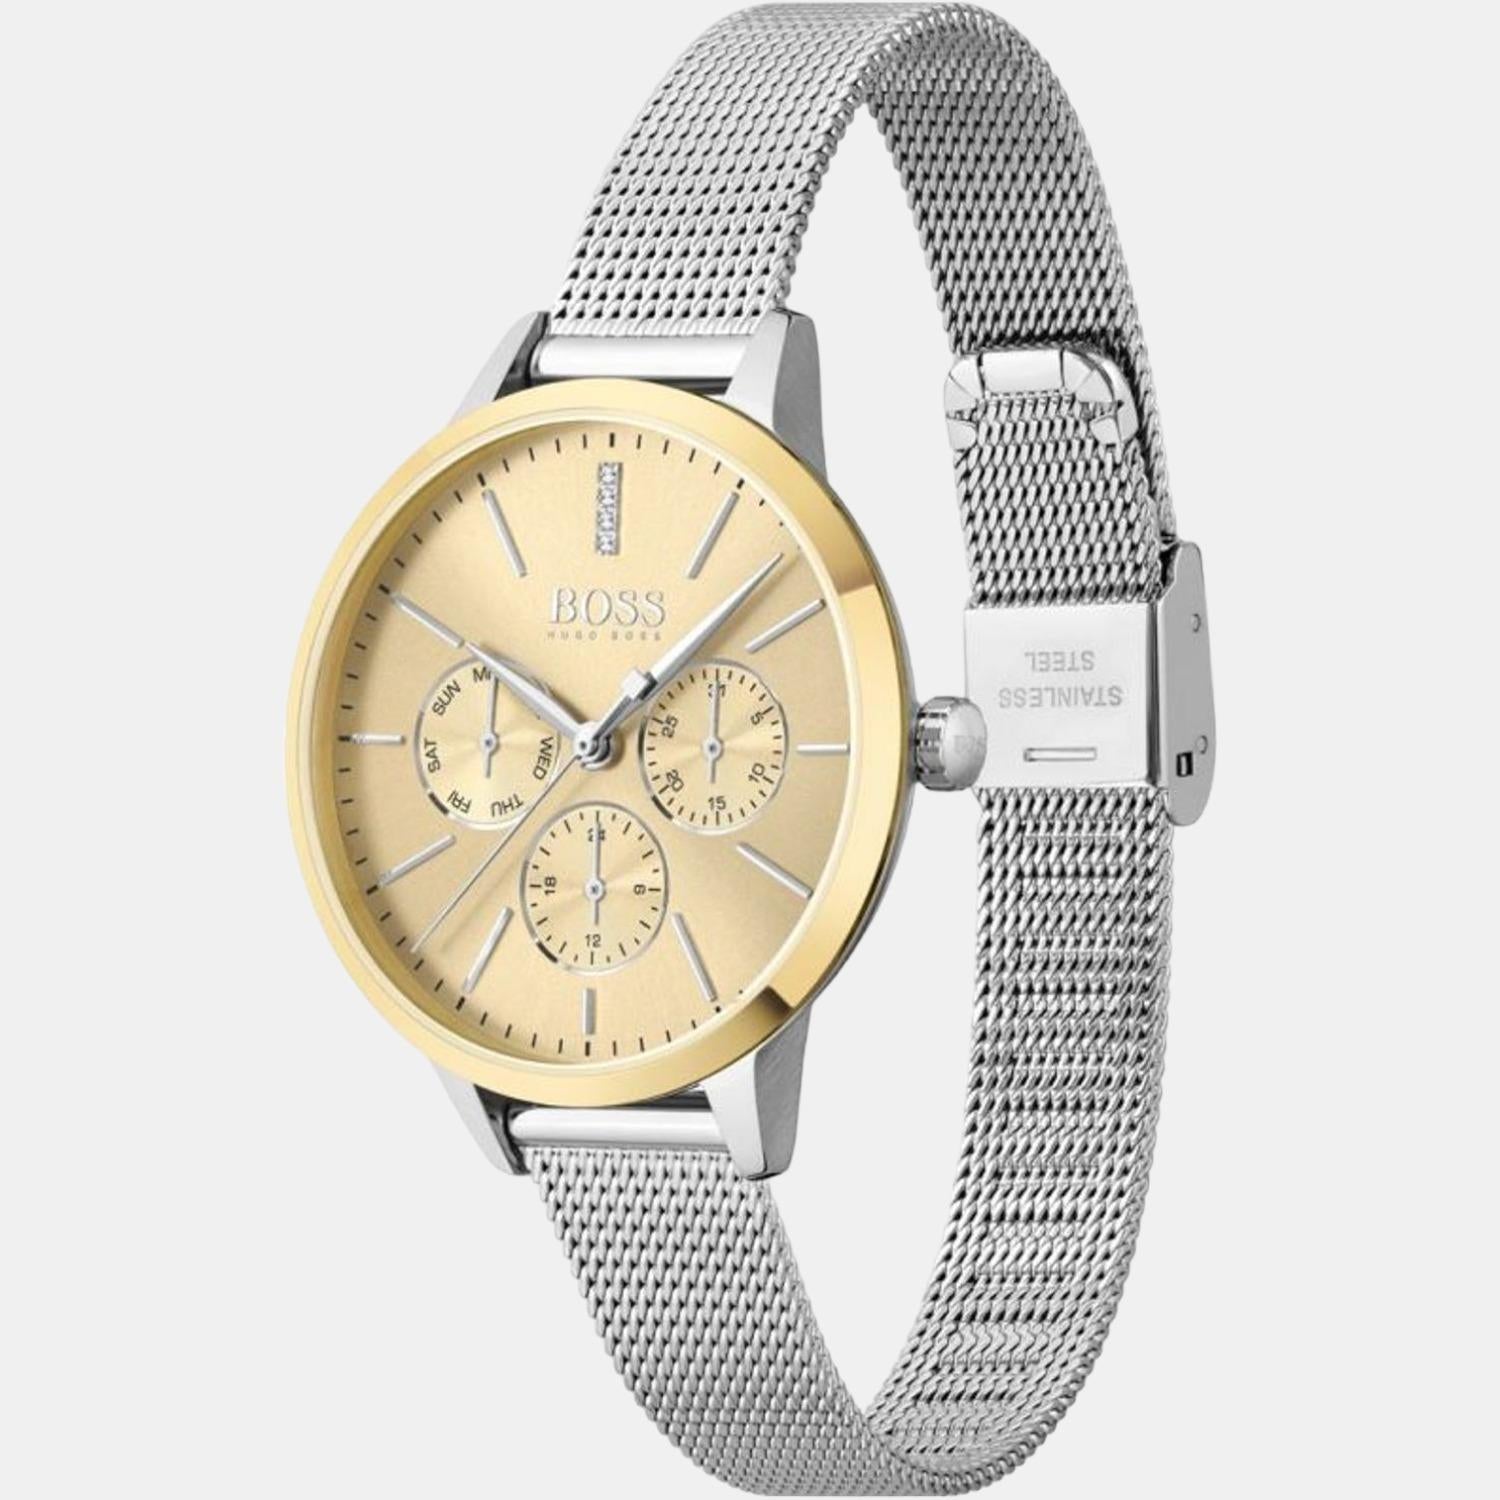 Hugo Boss BOSS Associate Chronograph Men's Watch HB1513976 - Gifts for him